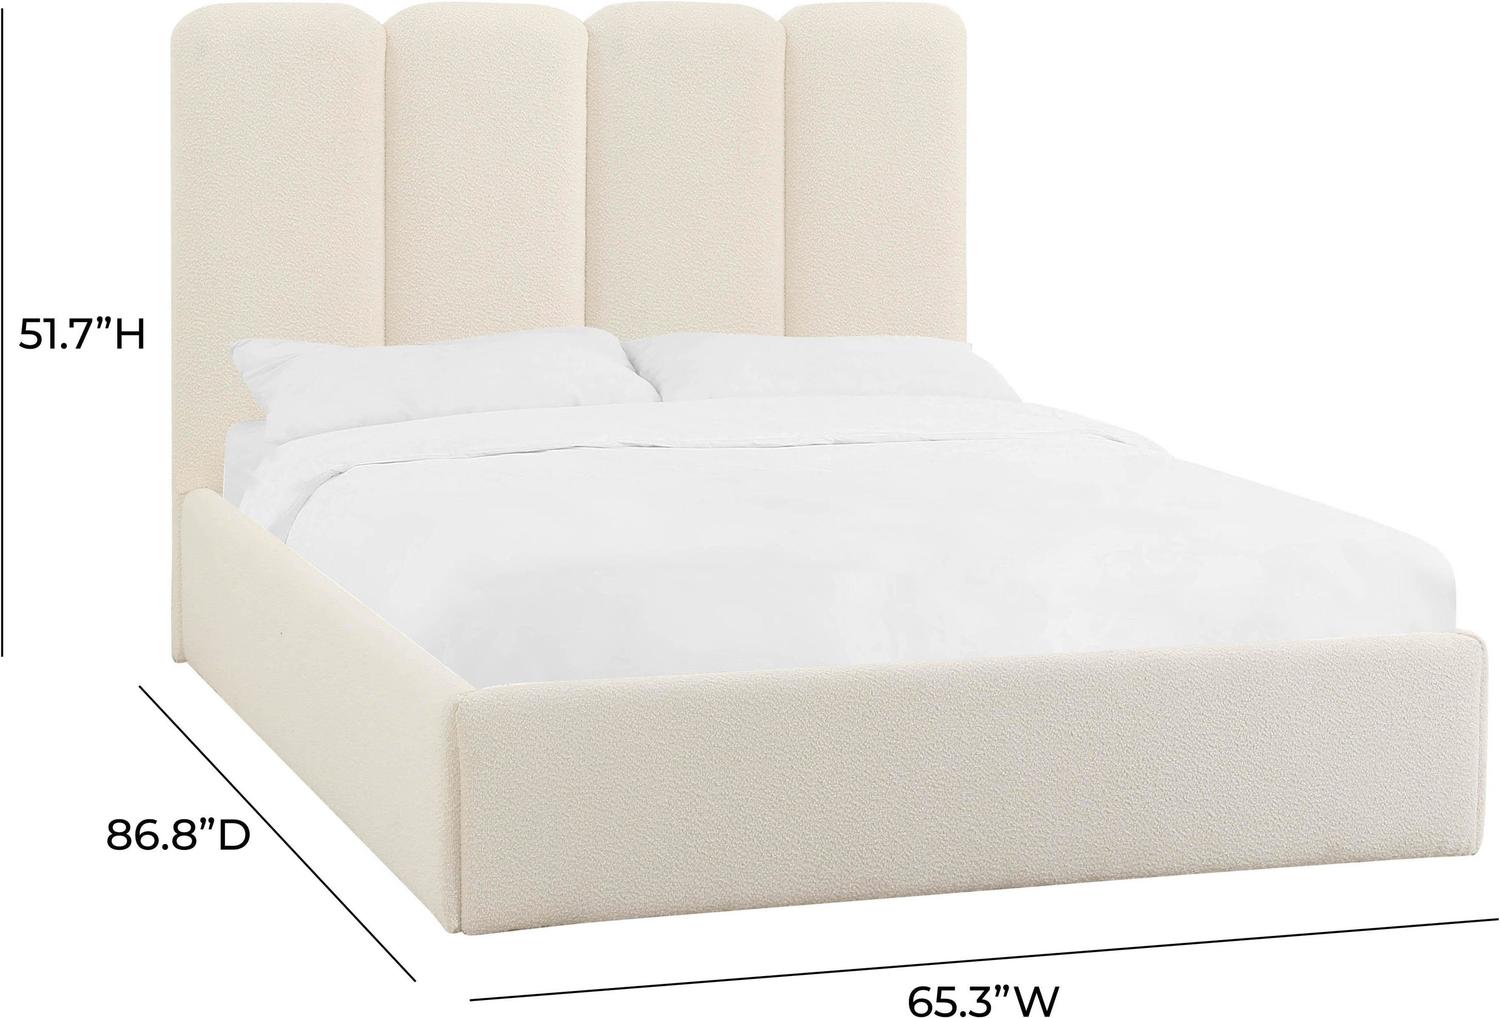 queen mattress platform base Tov Furniture Beds Cream